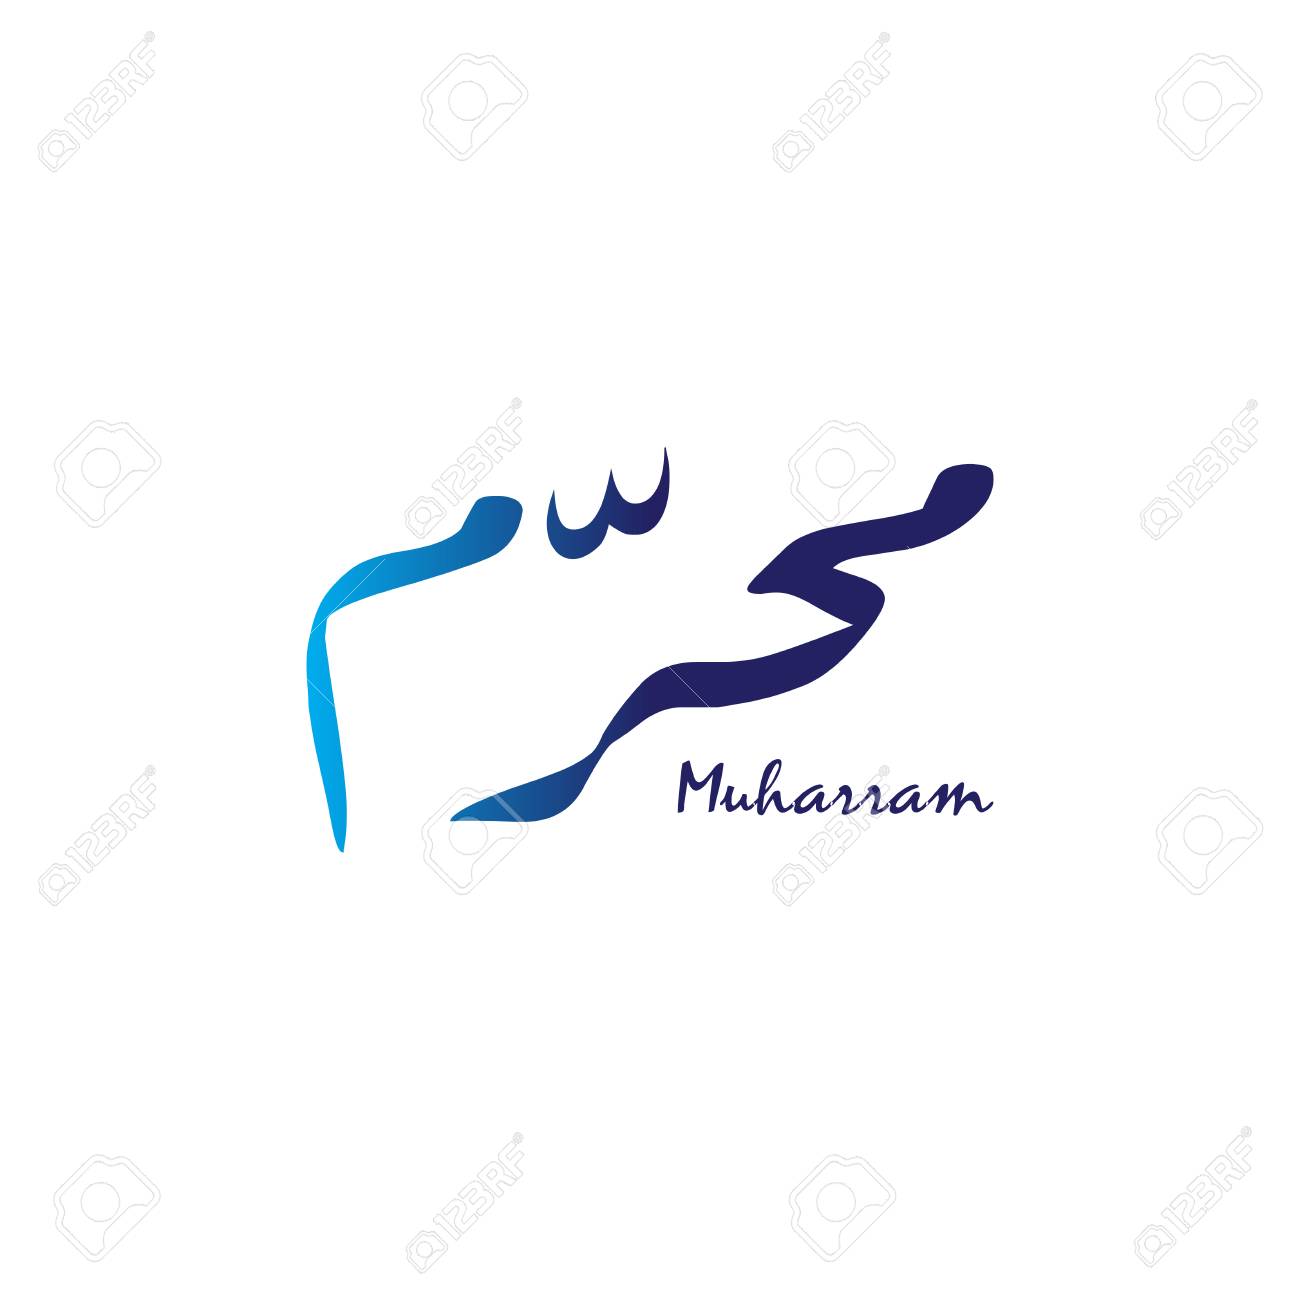 Download Logo Muharam - KibrisPDR